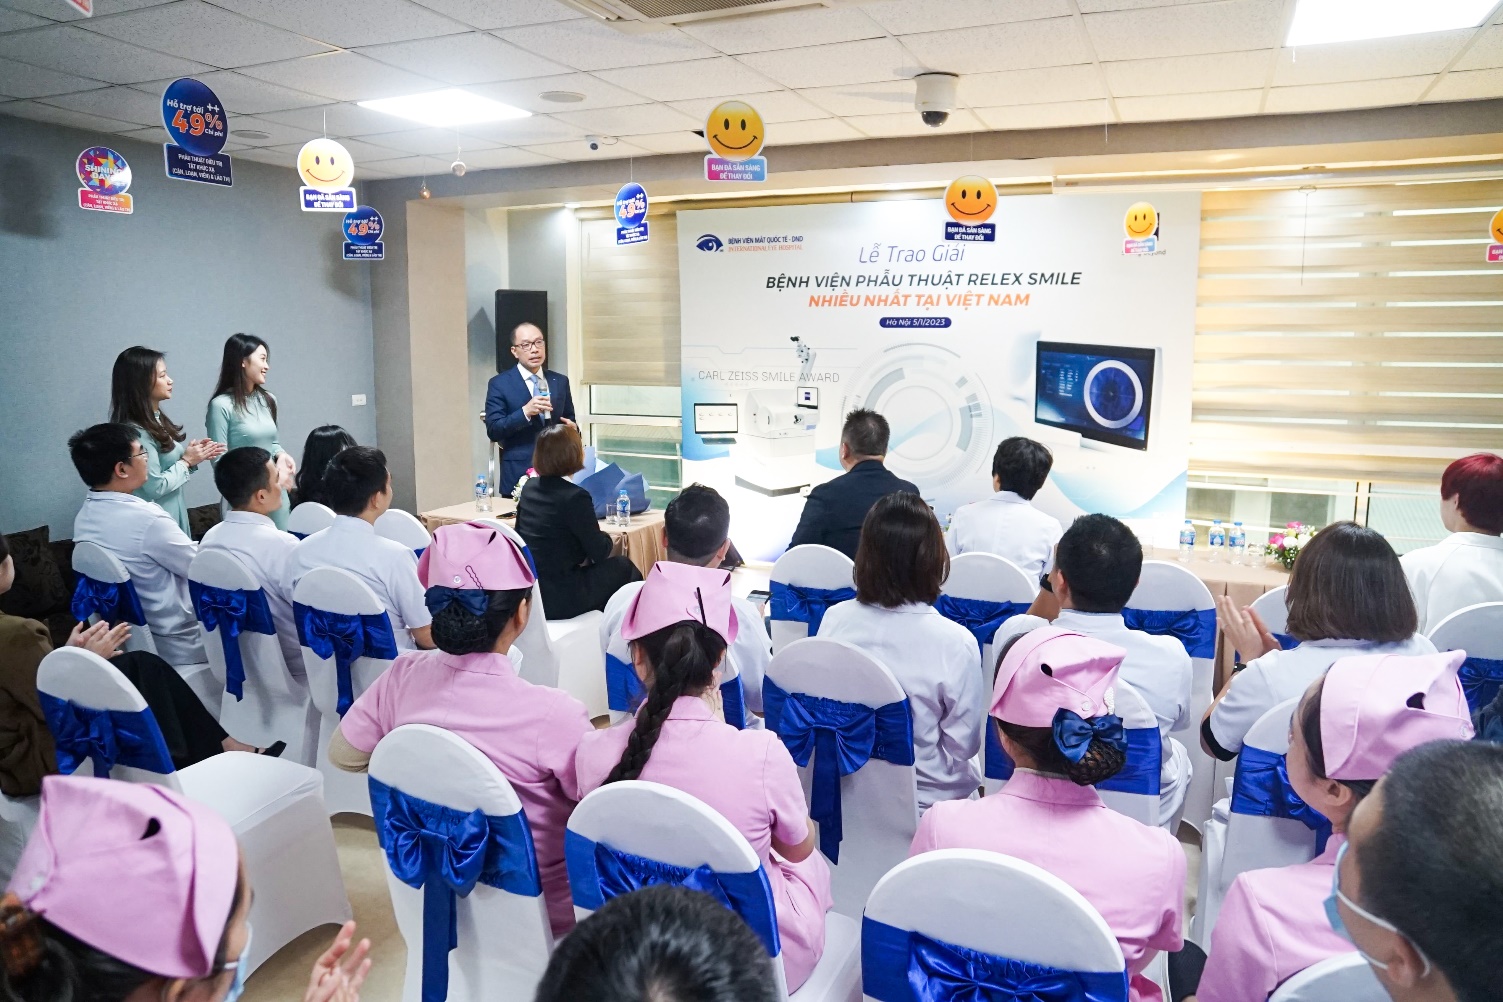 Bệnh viện Mắt Quốc tế DND nhận giải “Bệnh viện phẫu thuật ReLEx SMILE bằng phương pháp của Zeiss nhiều nhất tại Việt Nam” - Ảnh 2.